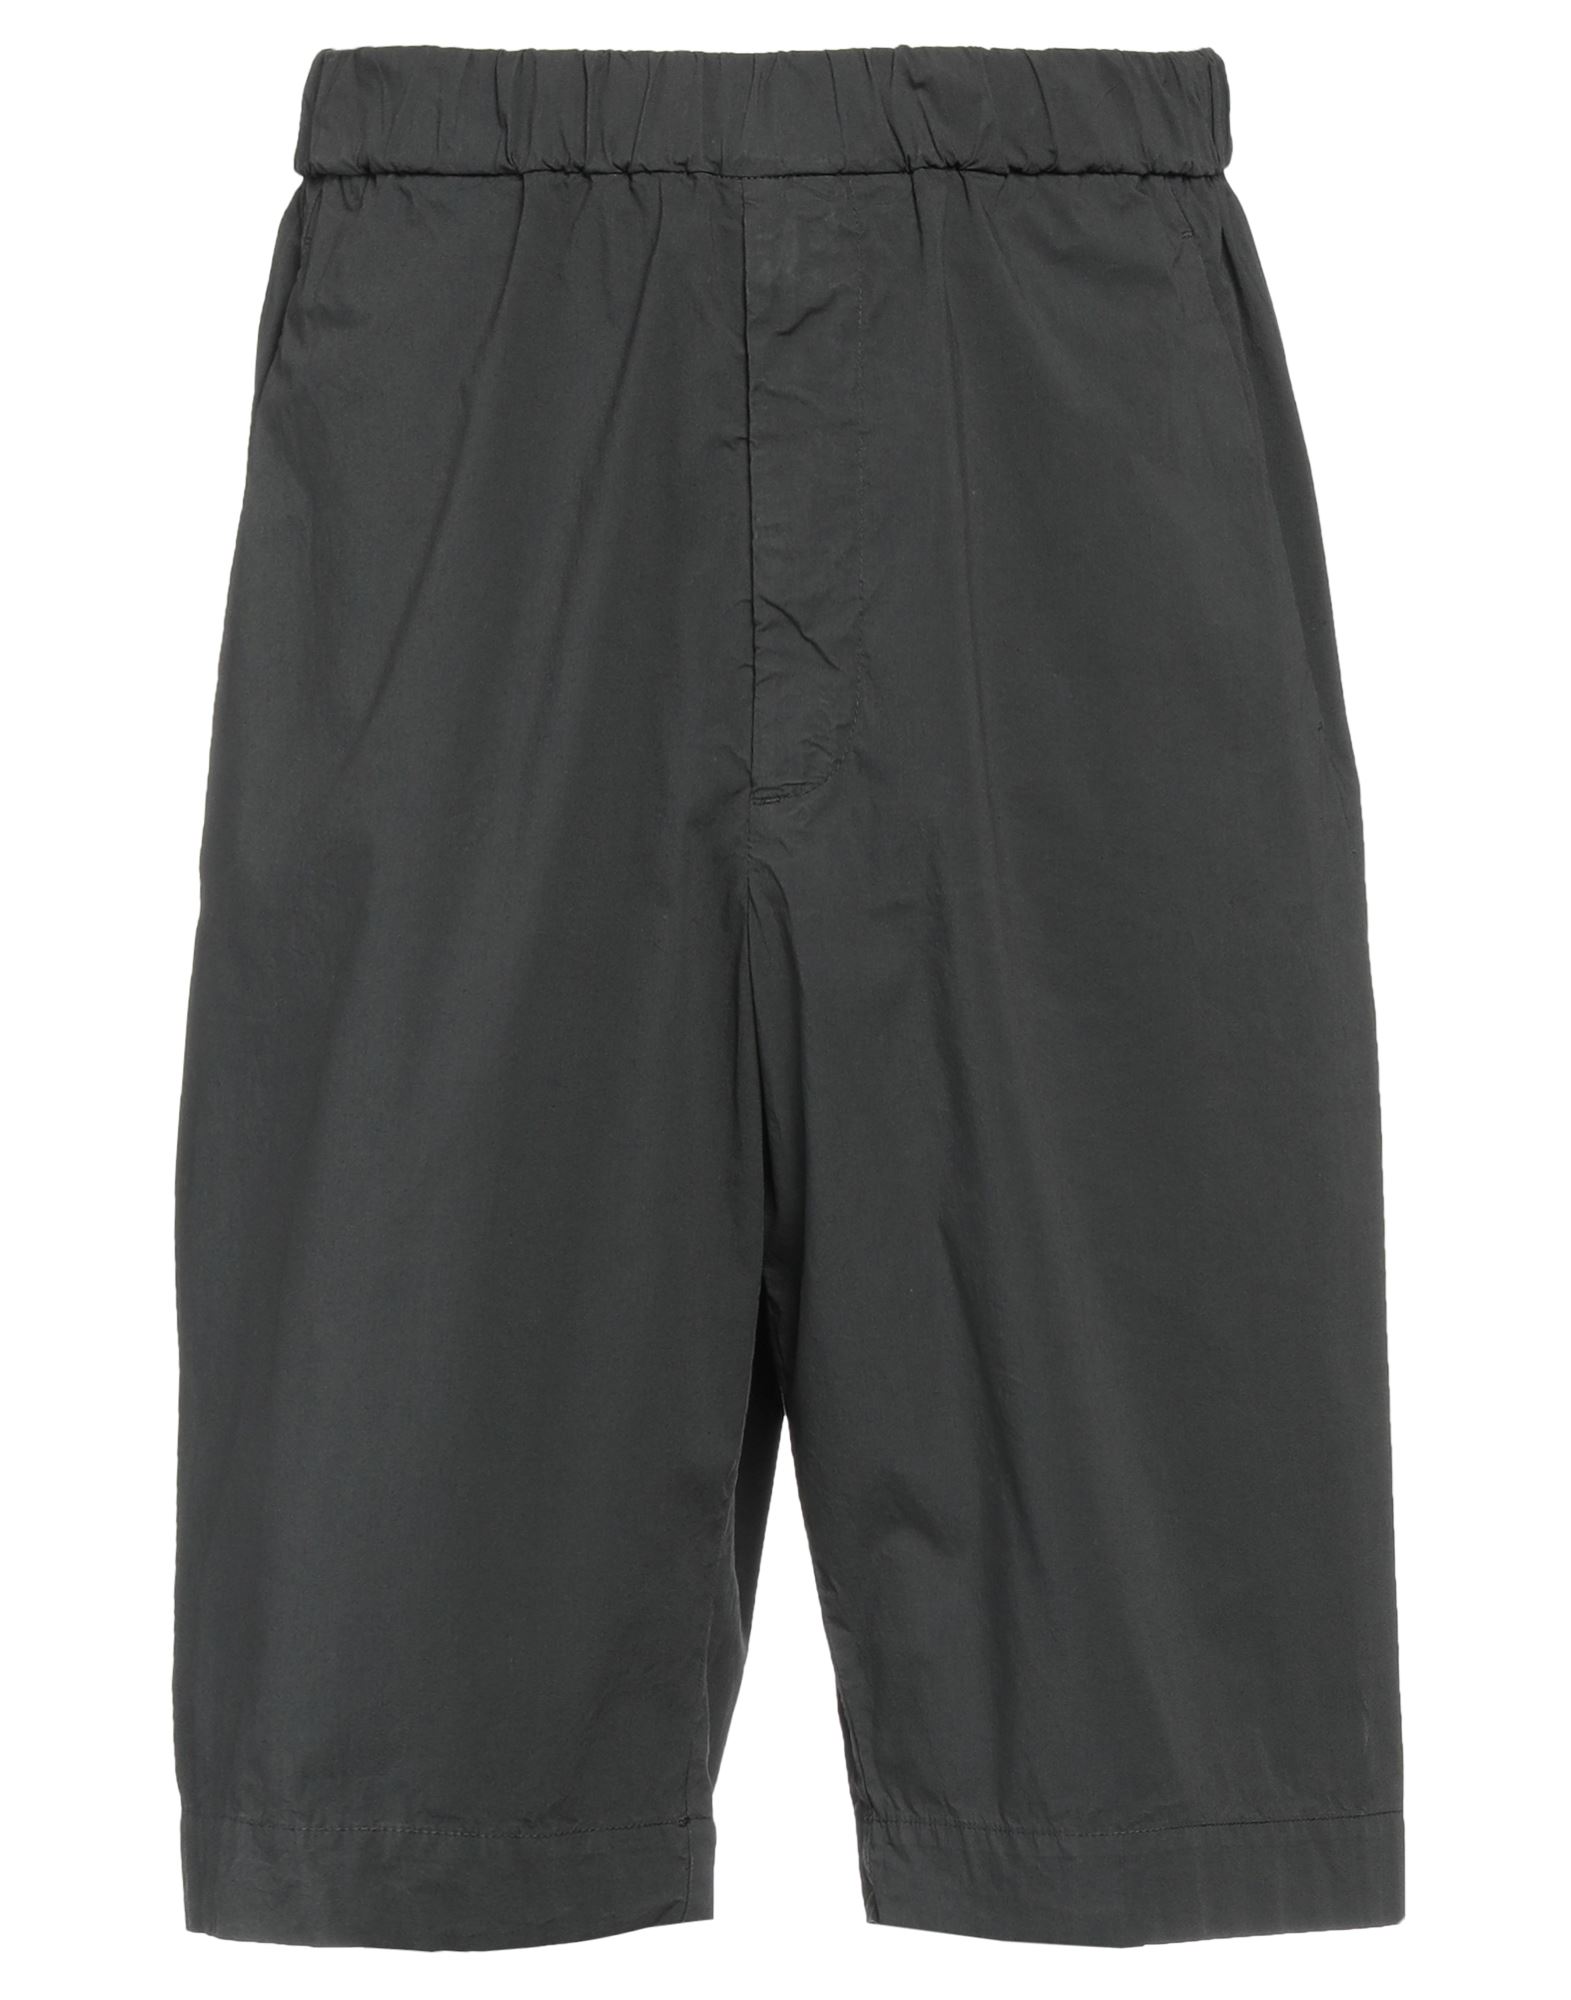 Barena Venezia Barena Man Shorts & Bermuda Shorts Steel Grey Size 32 Cotton, Elastane In Gray